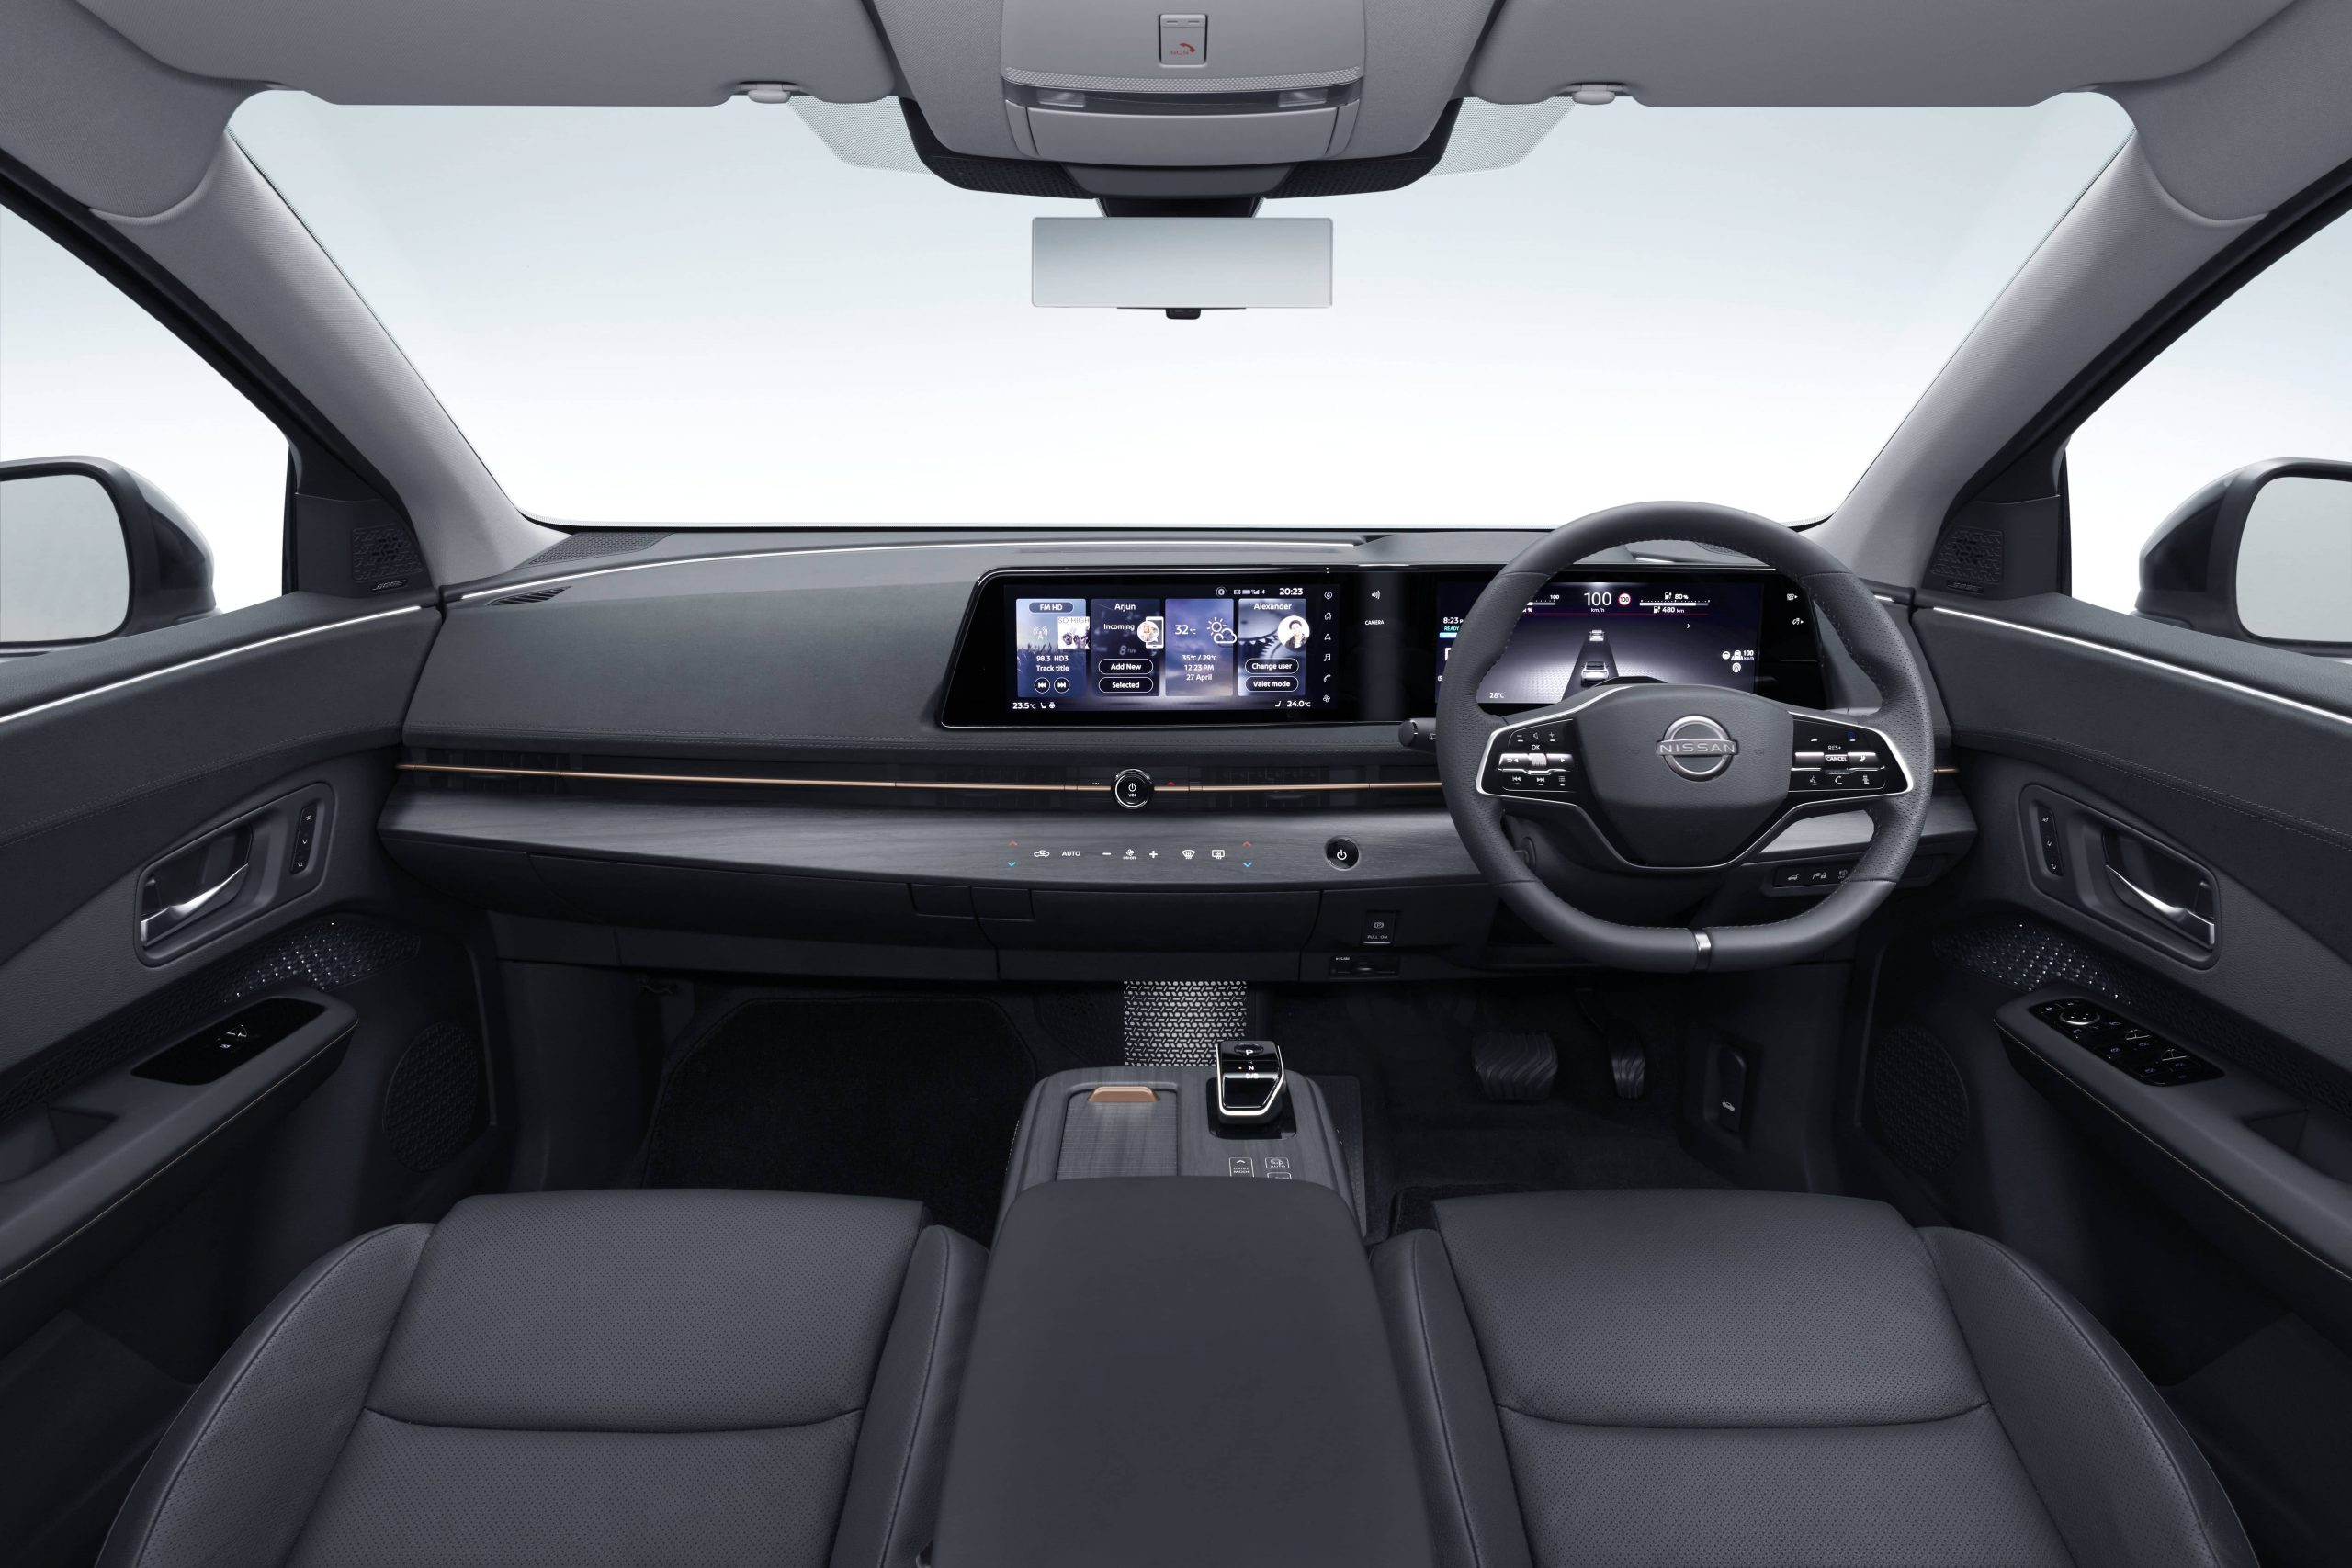 l'habitacle du Nissan Aryia comprenant 2 écrans de 12,3 po placés côte à côte dans le tableau de bord et toutes ses autres commodités